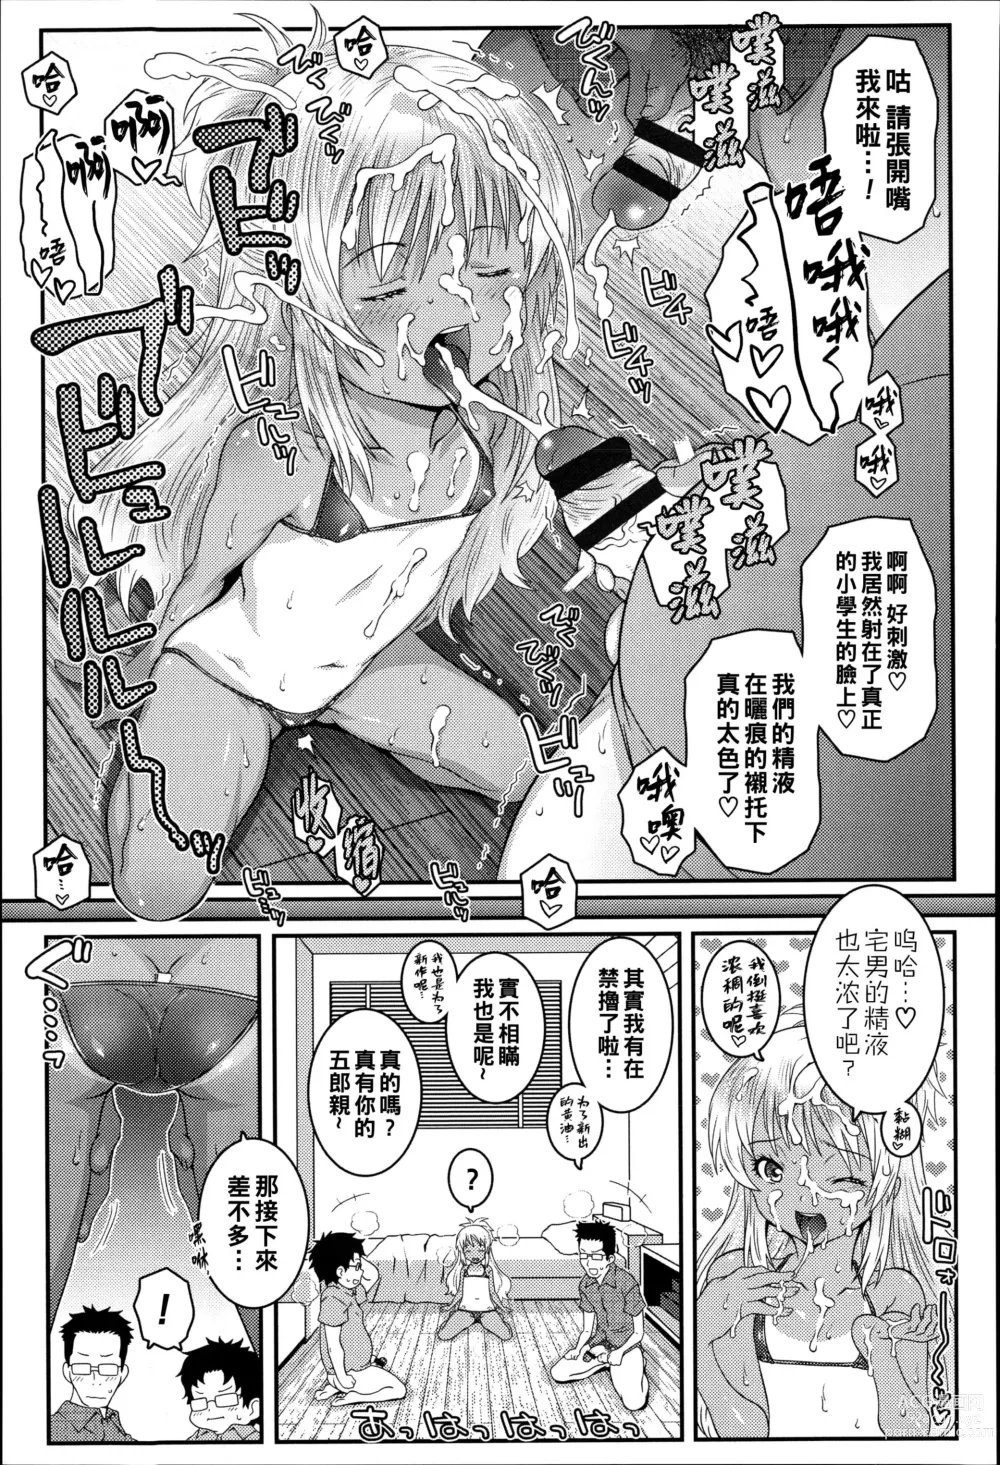 Page 9 of manga Bitch!!